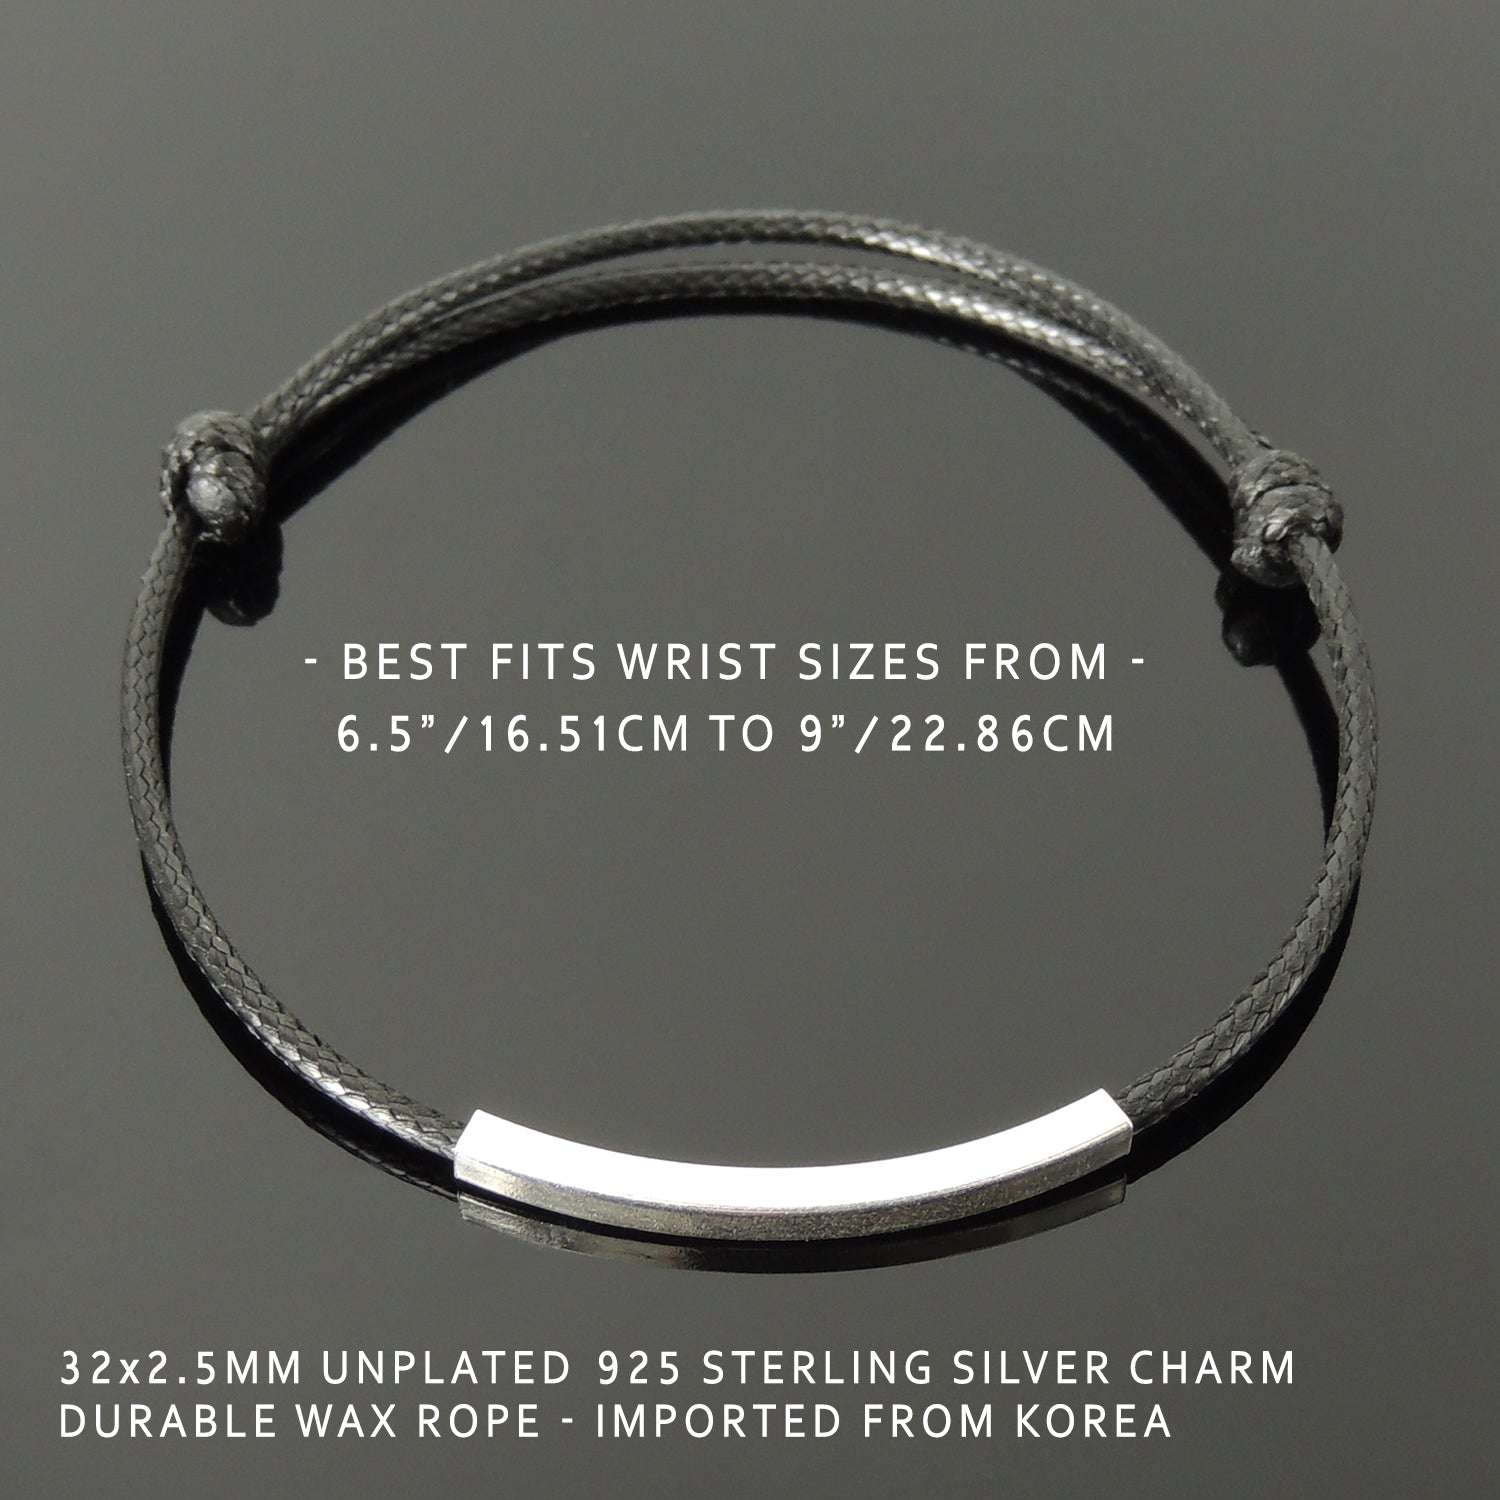 Cable Bracelet - 6mm - Men's Silver Chain Bracelet - JAXXON